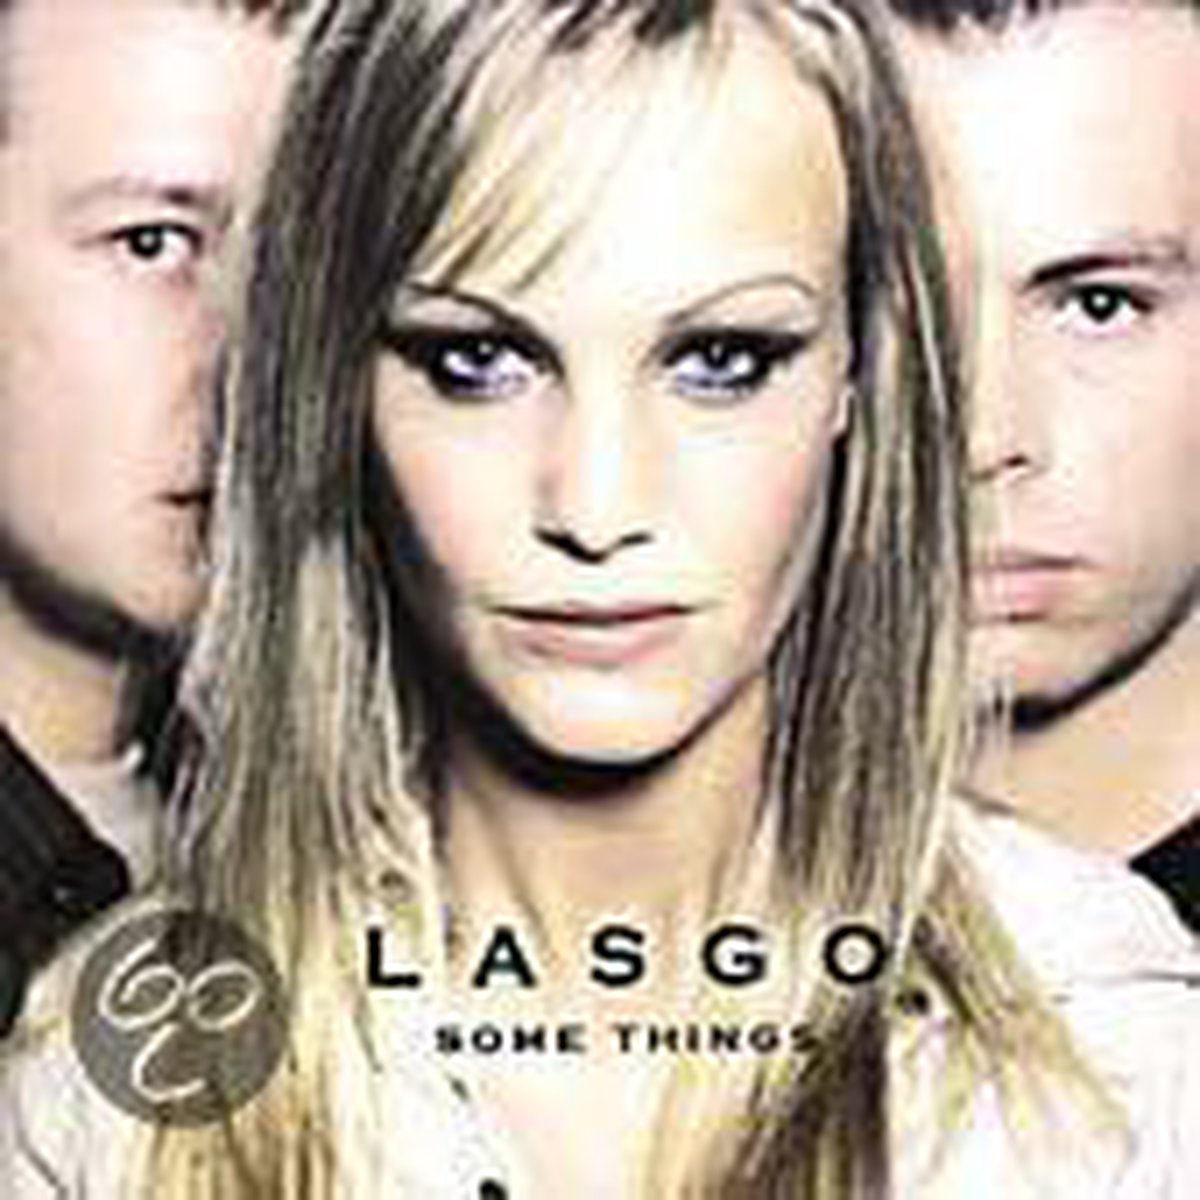 Some Things - Lasgo